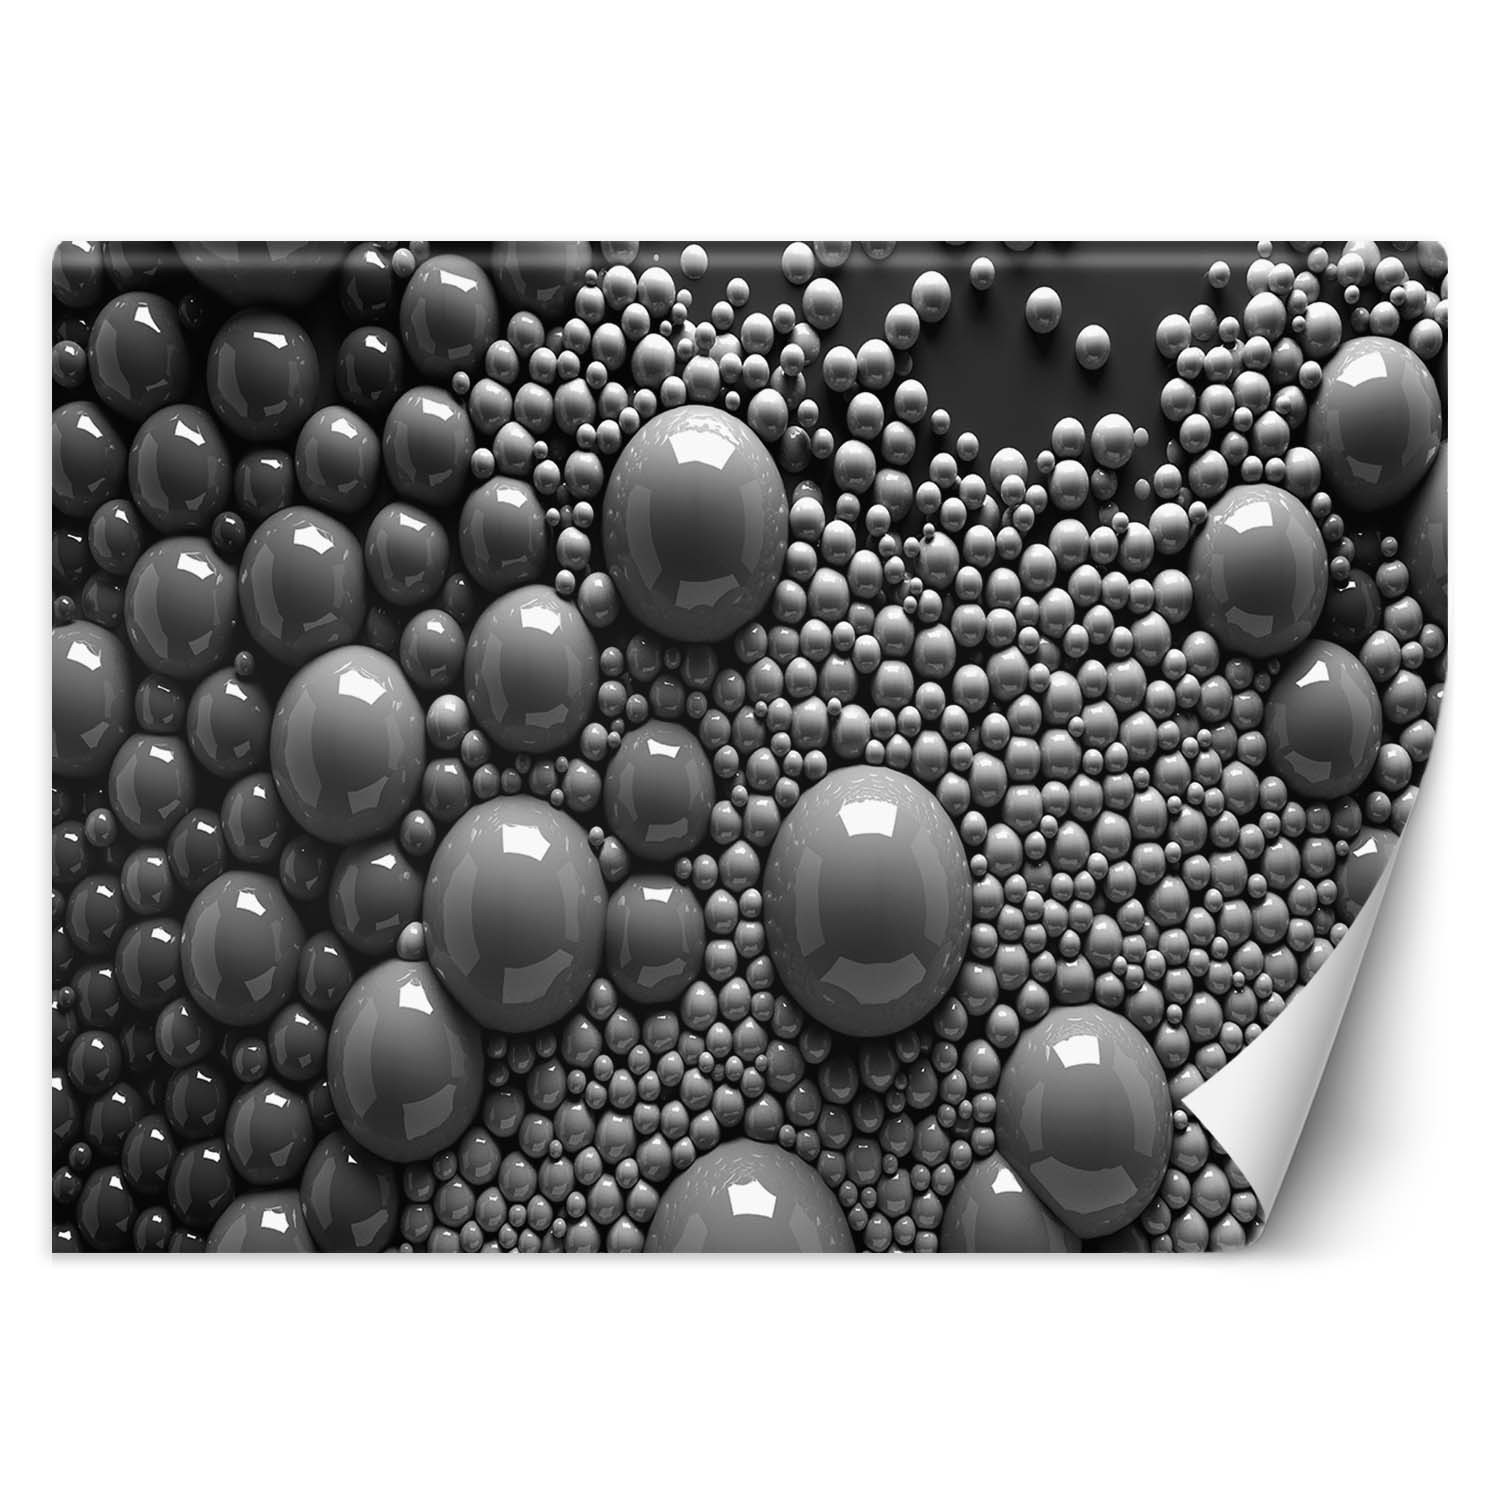 Trend24 – Behang – Abstracte Ballen 3D – Behangpapier – Fotobehang 3D – Behang Woonkamer – 250x175x2 cm – Incl. behanglijm